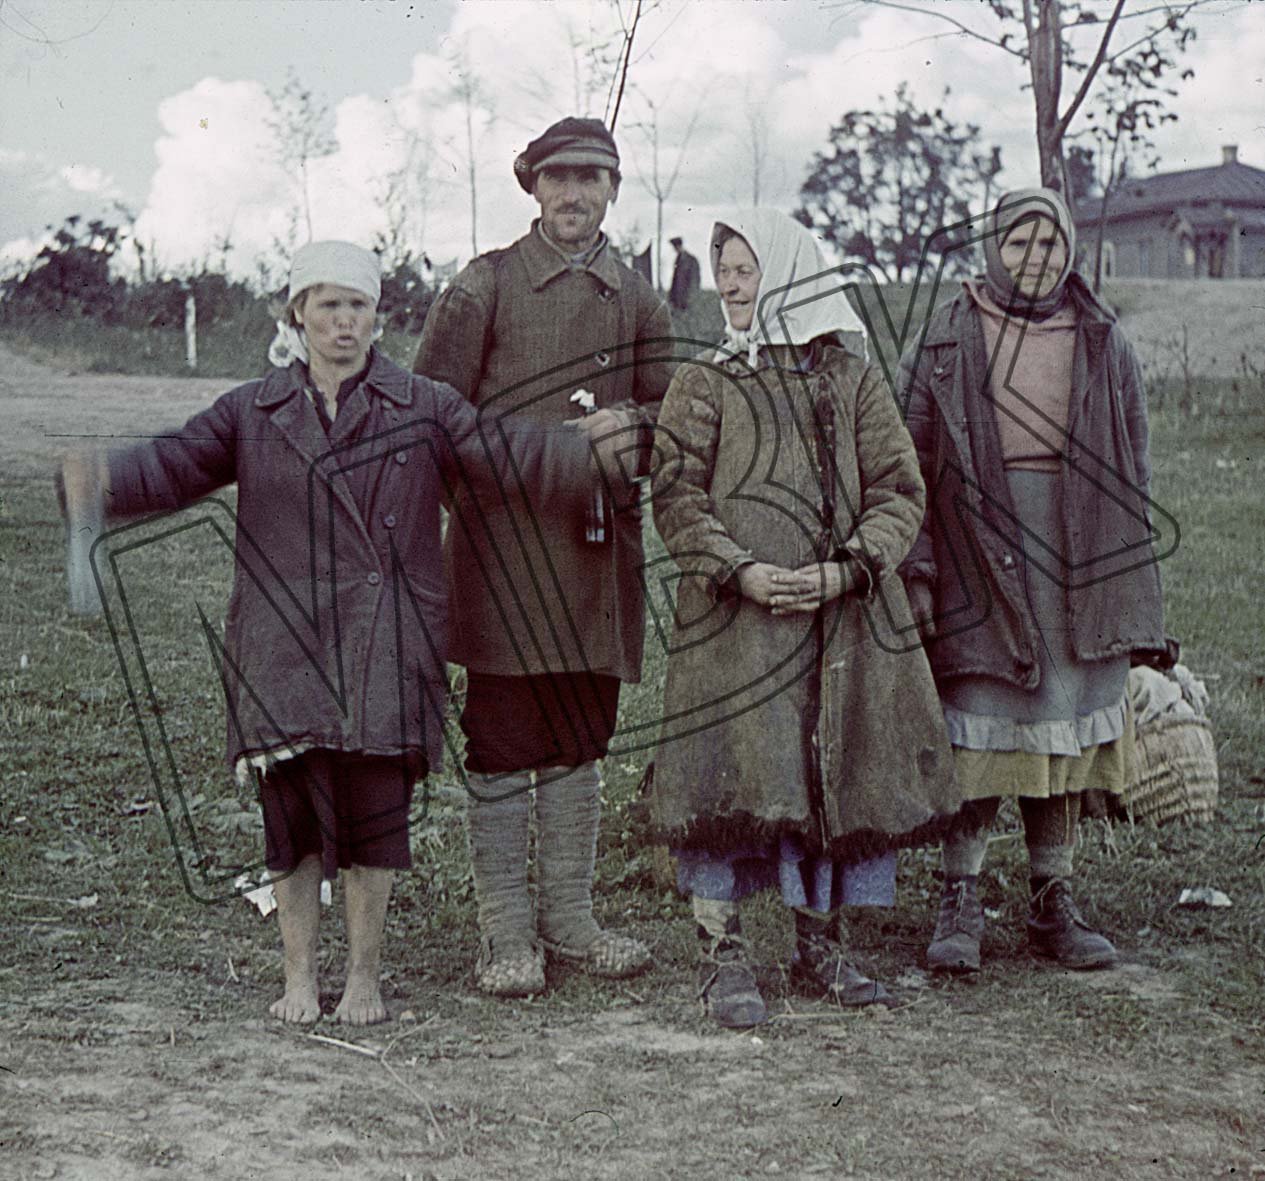 Fotografie: Einwohner der Ortschaft Prudki, Gebiet Smolensk, September 1941 (Museum Berlin-Karlshorst RR-P)